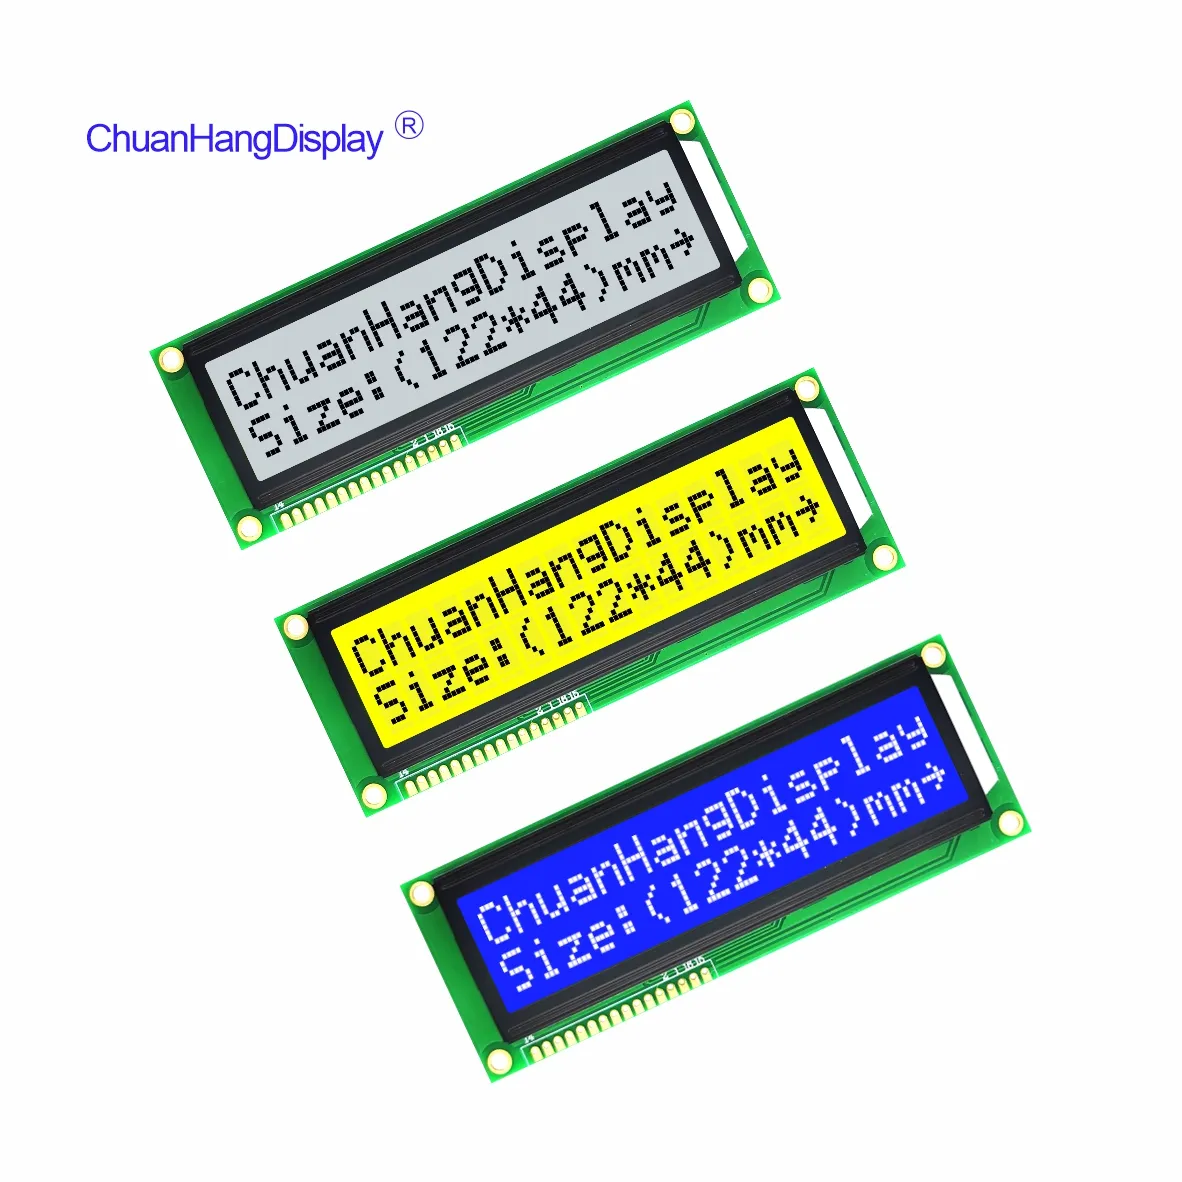 ChuanHang, mavi/sarı-yeşil/gri/siyah/3.3V/5.0V ile geniş sıcaklık 16x2 büyük karakter lcd LCD1602 modülü üretmektedir